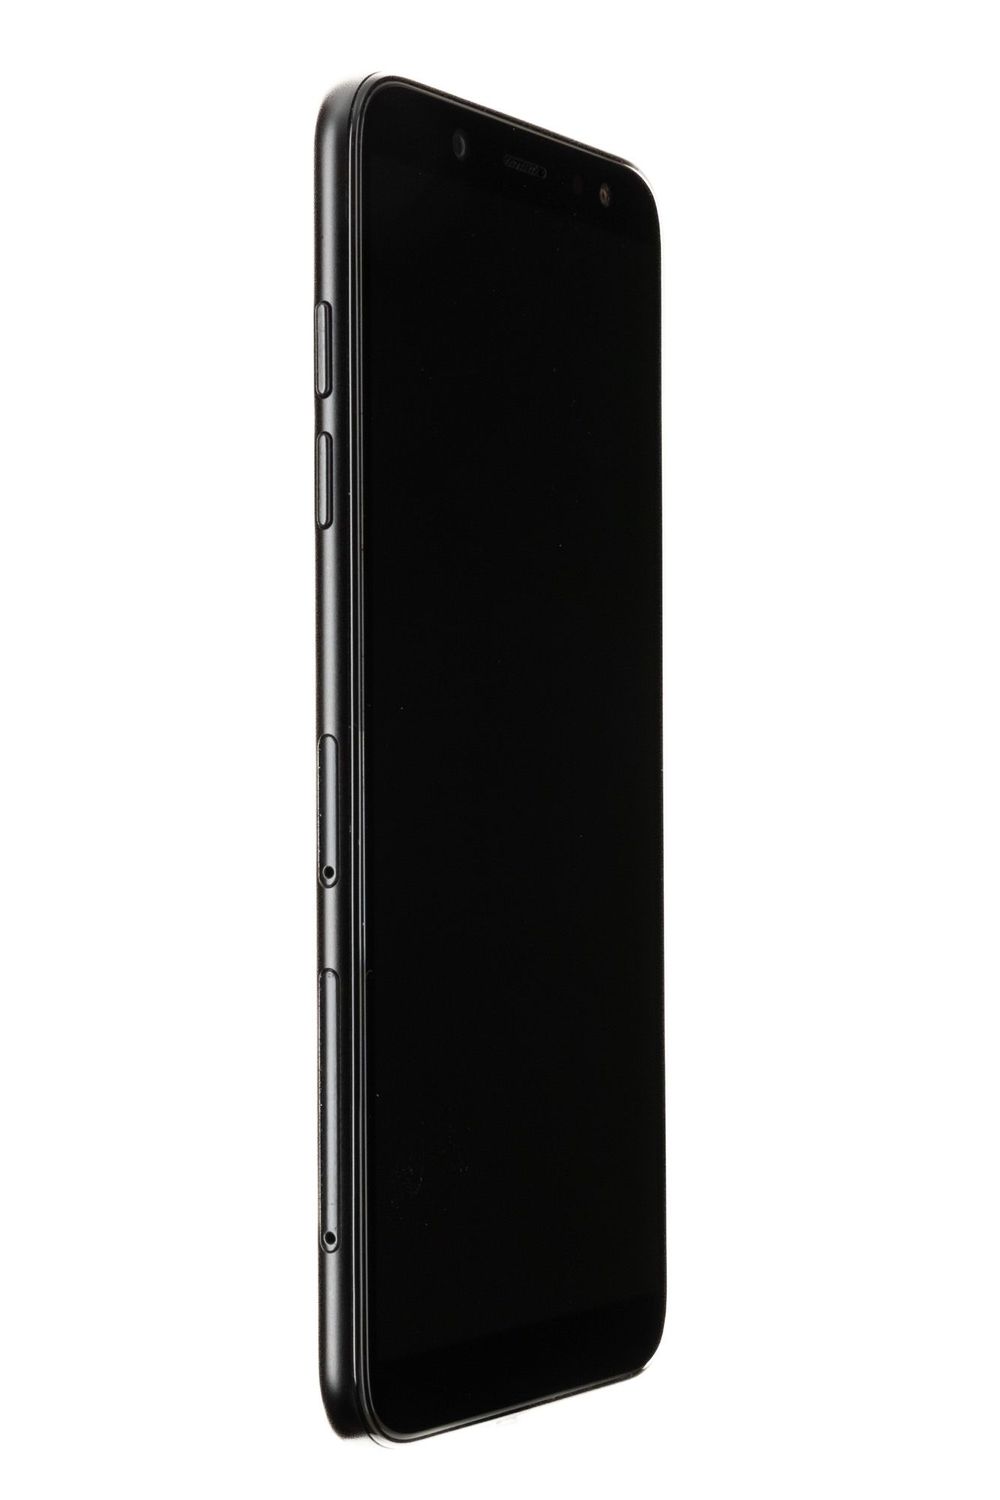 Κινητό τηλέφωνο Samsung Galaxy A6 (2018), Black, 32 GB, Bun